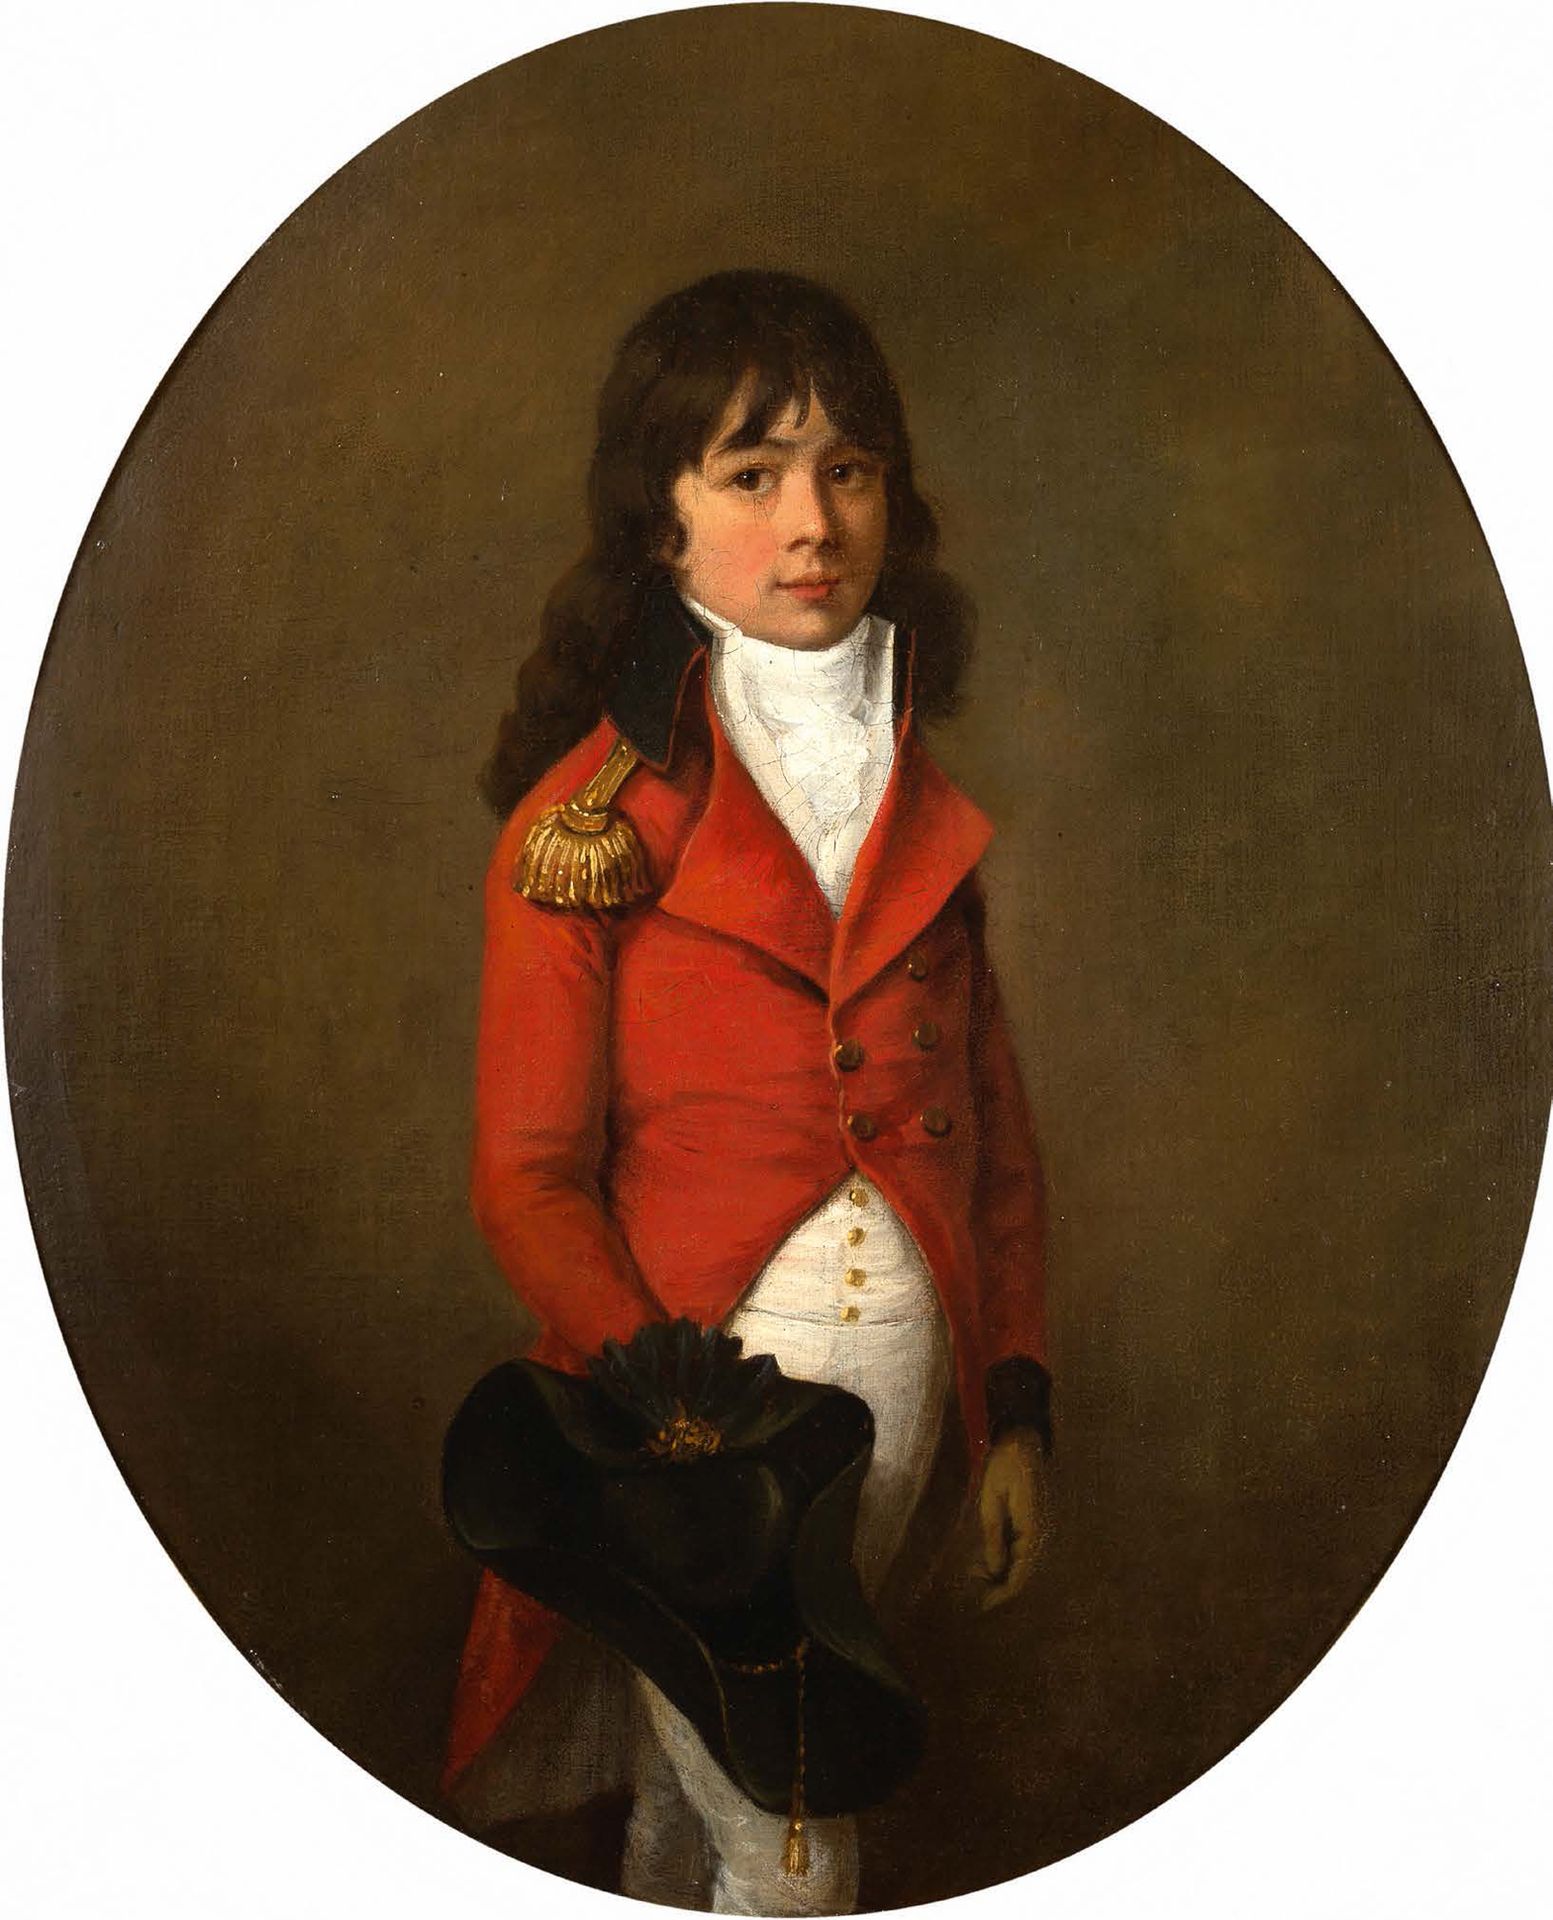 ATTRIBUÉ À HENRI-PIERRE DANLOUX PARIS, 1753 - 1809 
穿着步兵制服的孩子的肖像。

穿着炮兵服的儿童画像

布&hellip;